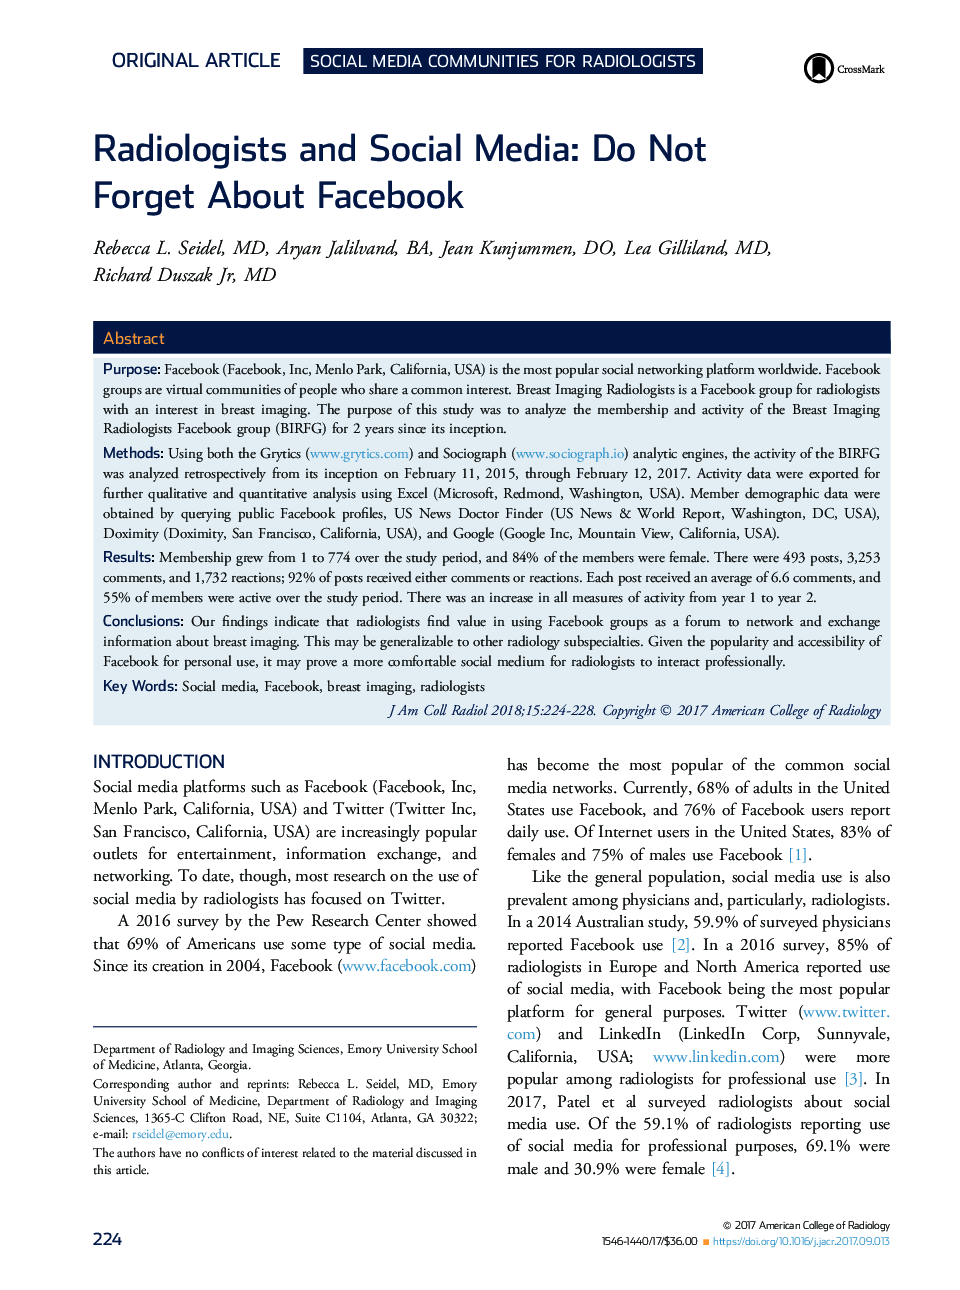 رادیولوژی و رسانه های اجتماعی: درباره فیس بوک فراموش نکنید 